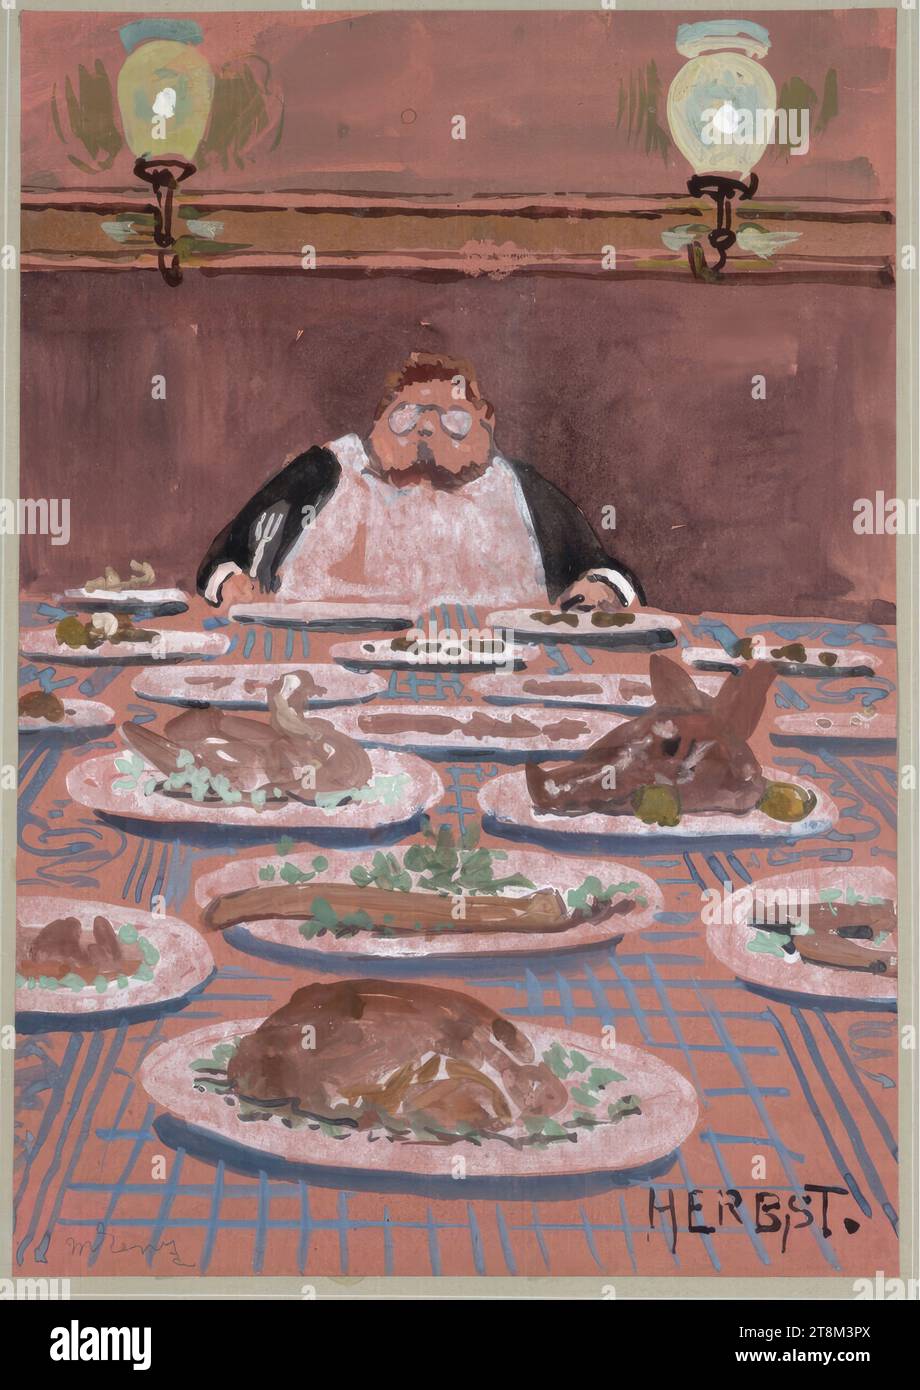 Herbst. Nowak Festessen, Hagengesellschaft, Maximilian Lenz (Wien 1860 - 1948 Wien), Zeichnung, Aquarell, 31,3 x 22 cm, re. Und: „HERBST Stockfoto